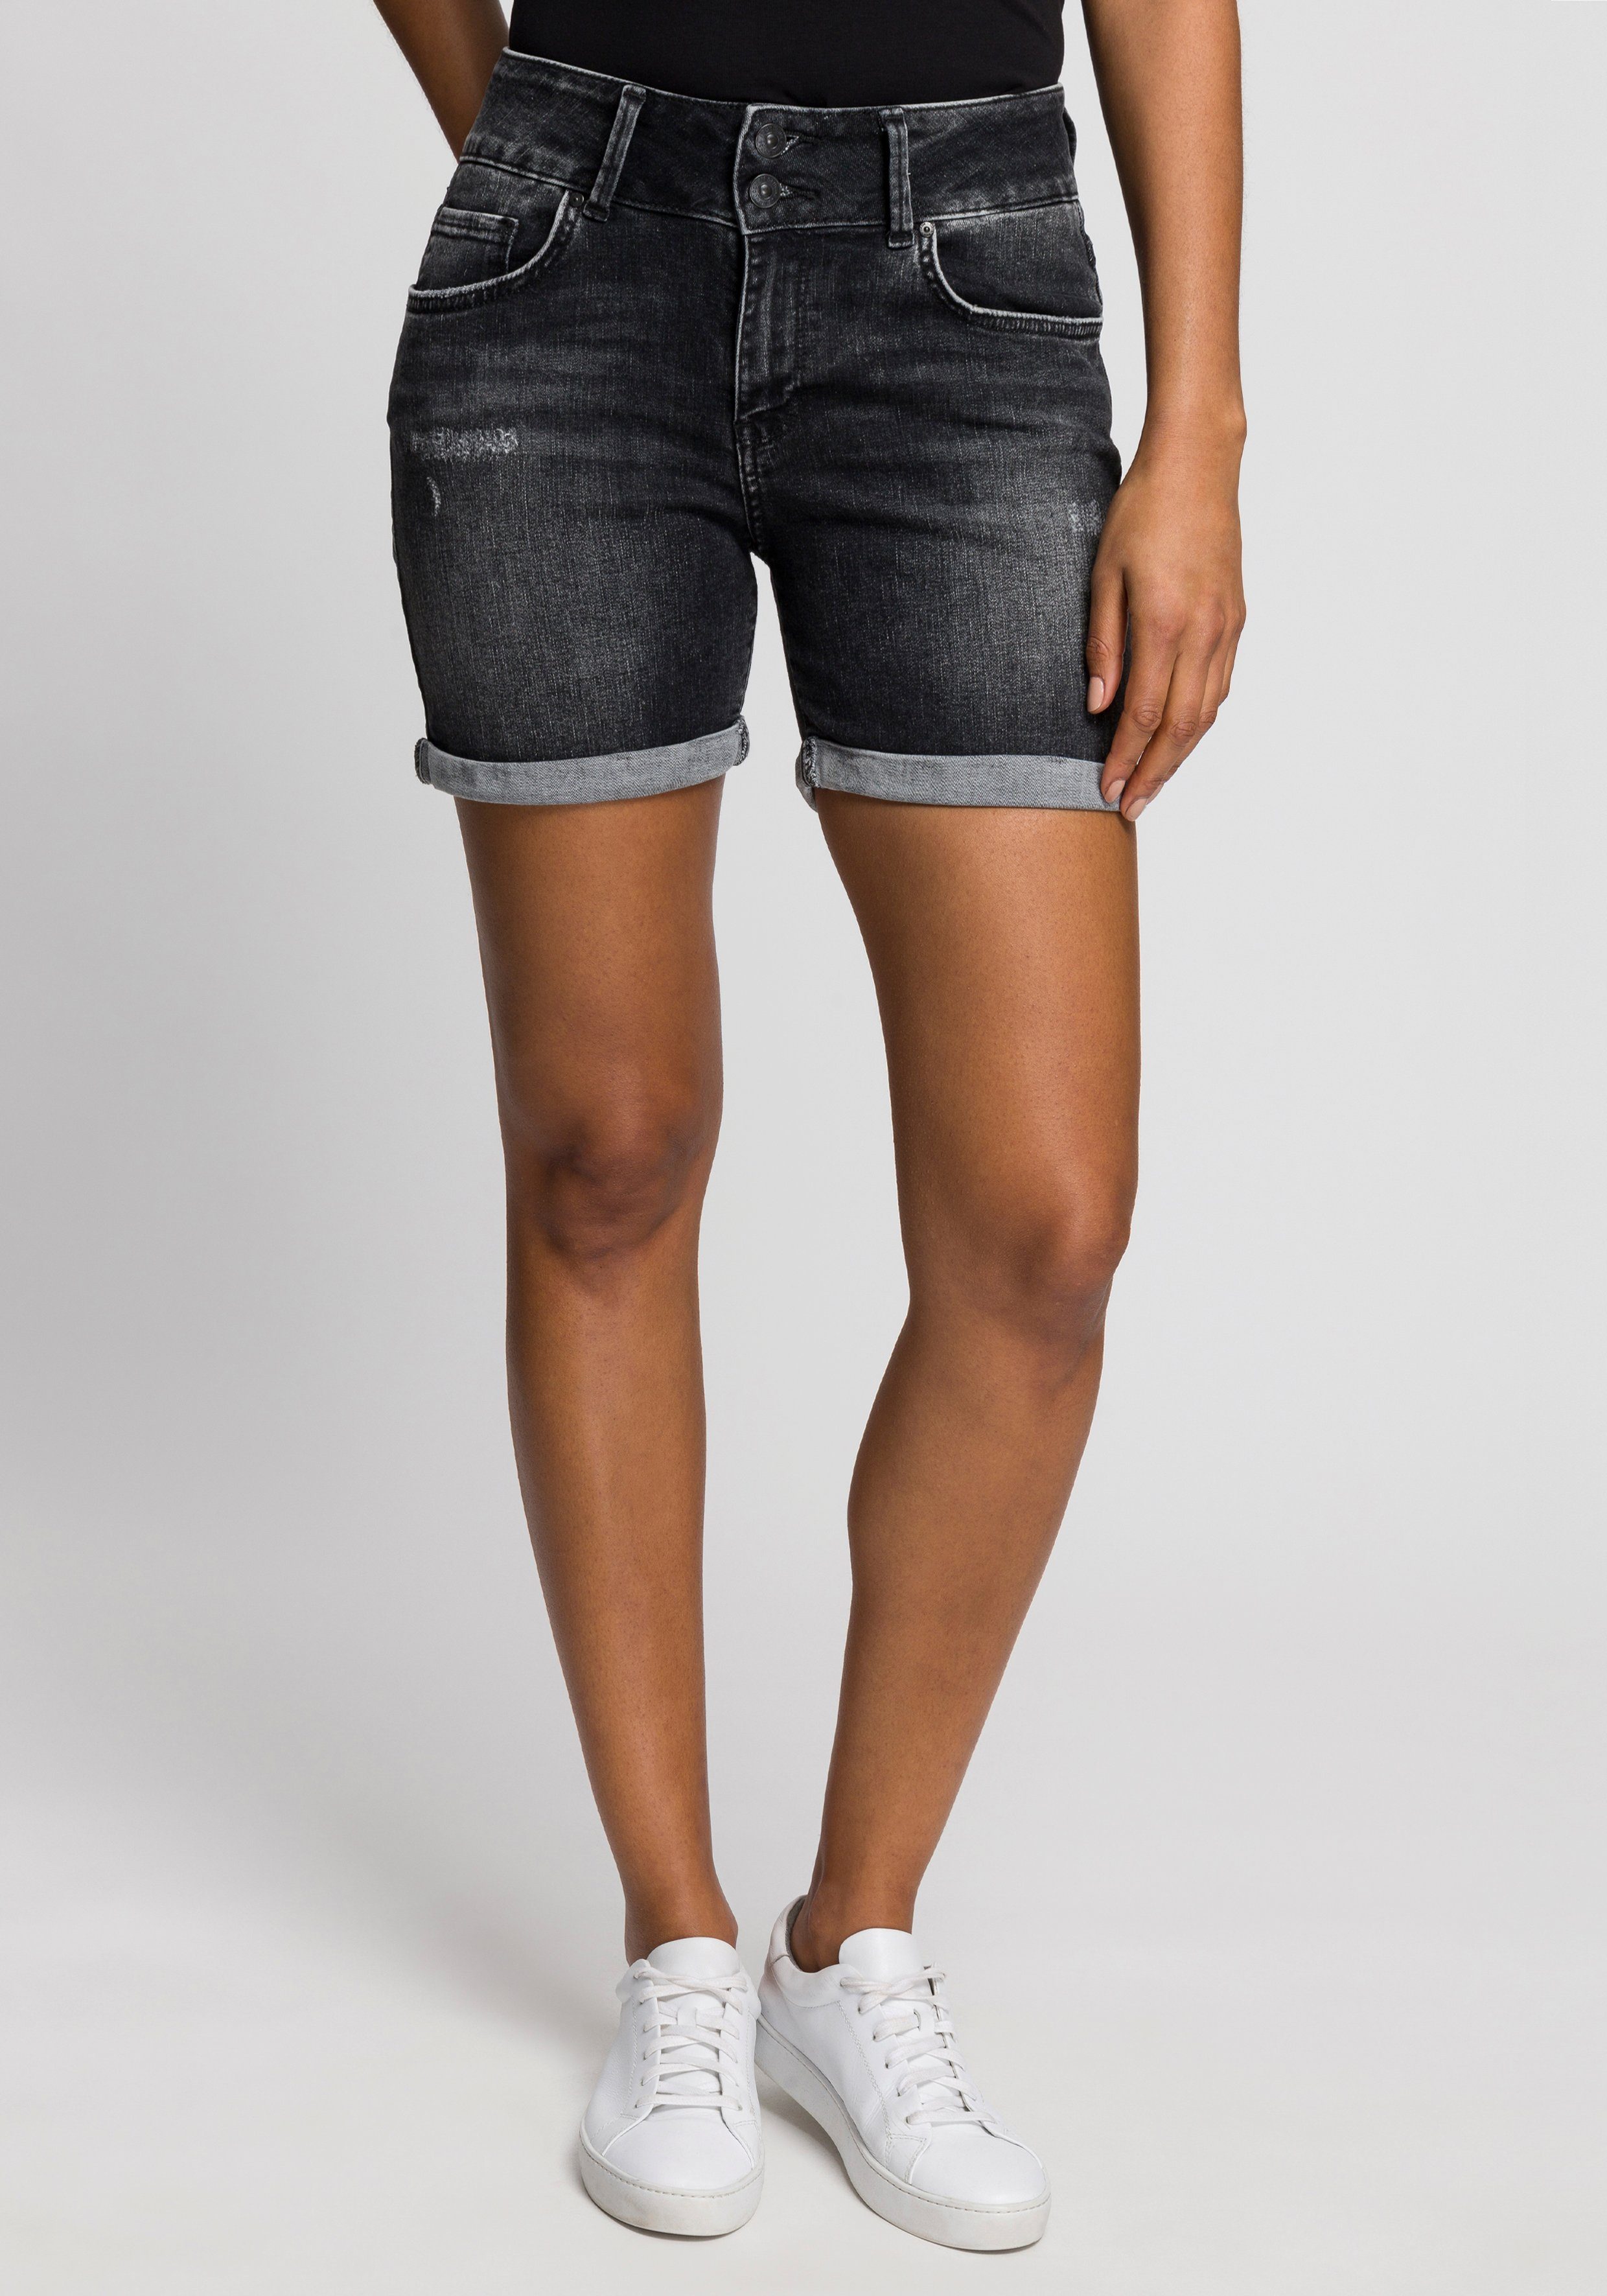 Schwarze Jeans Shorts für Damen online kaufen | OTTO